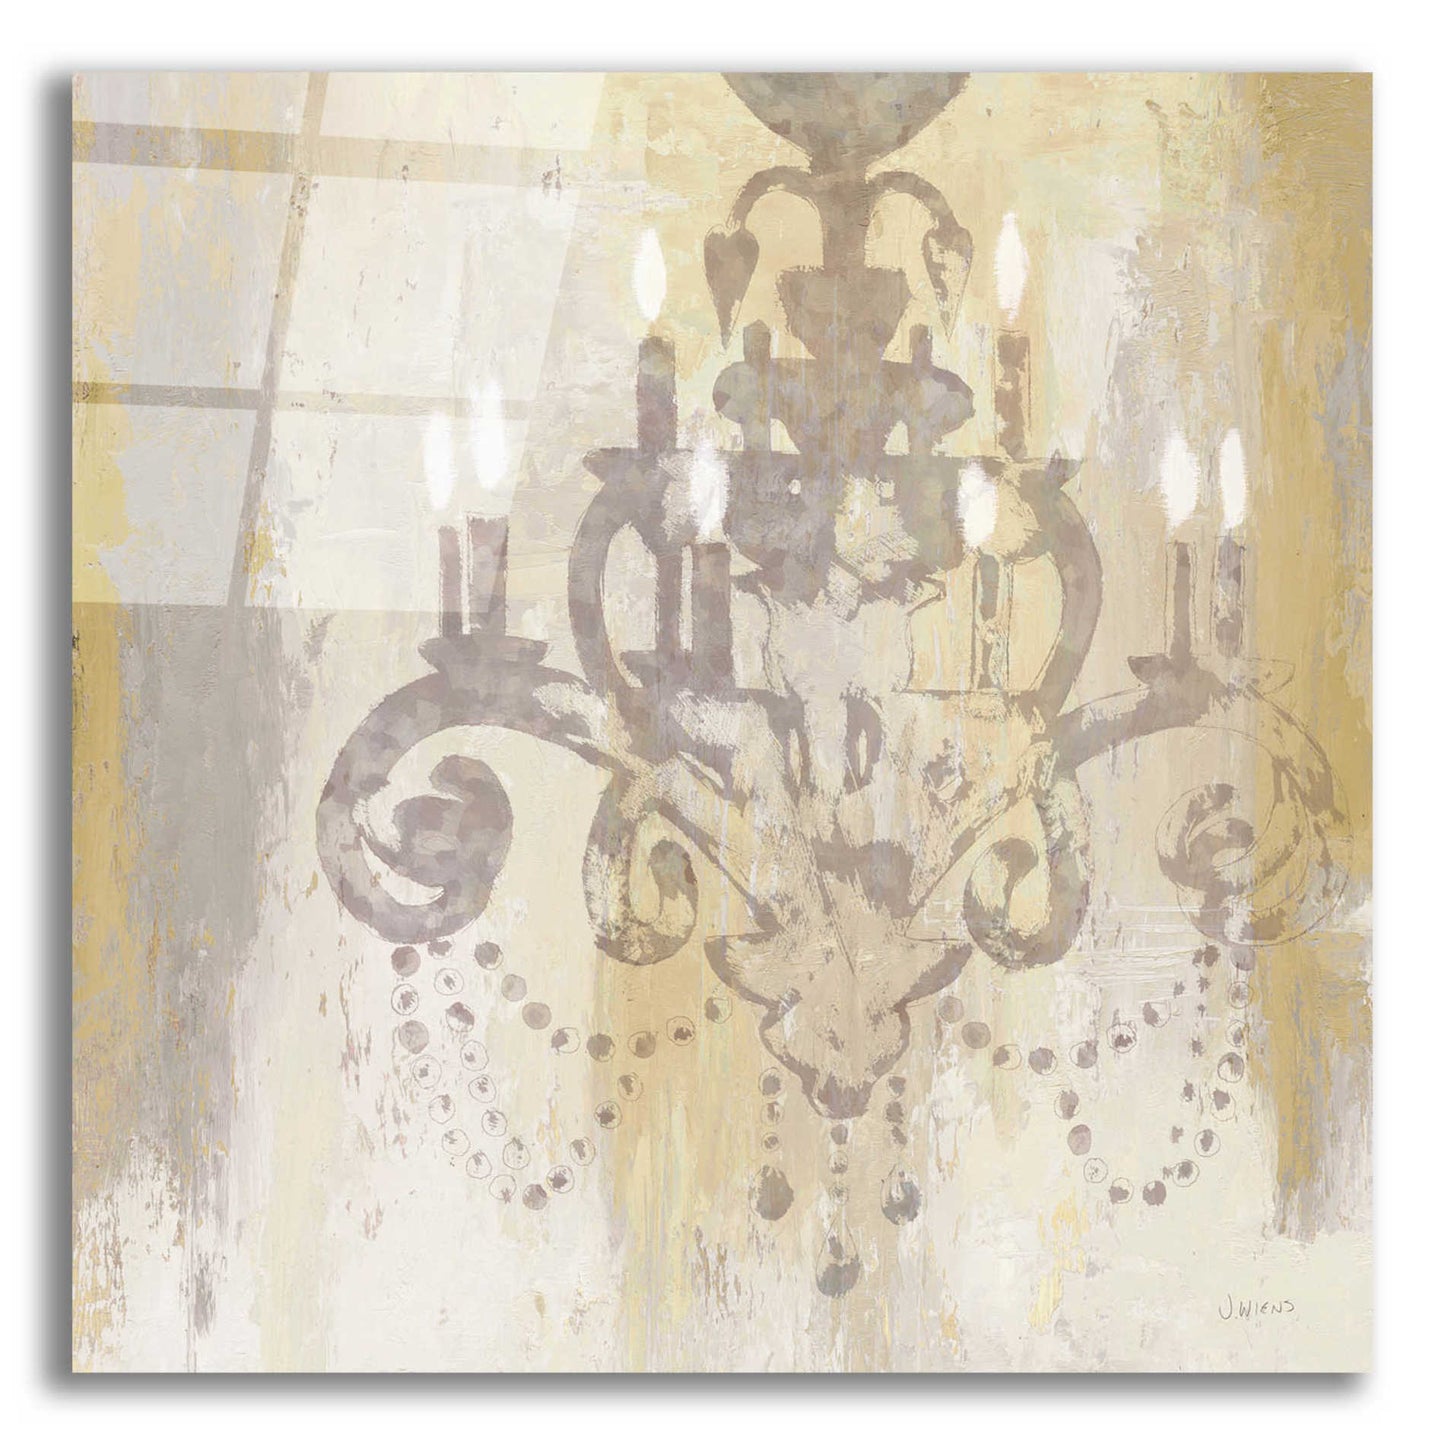 Epic Art 'Candelabra Gold II' by James Wiens, Acrylic Glass Wall Art,12x12x1.1x0,18x18x1.1x0,26x26x1.74x0,37x37x1.74x0